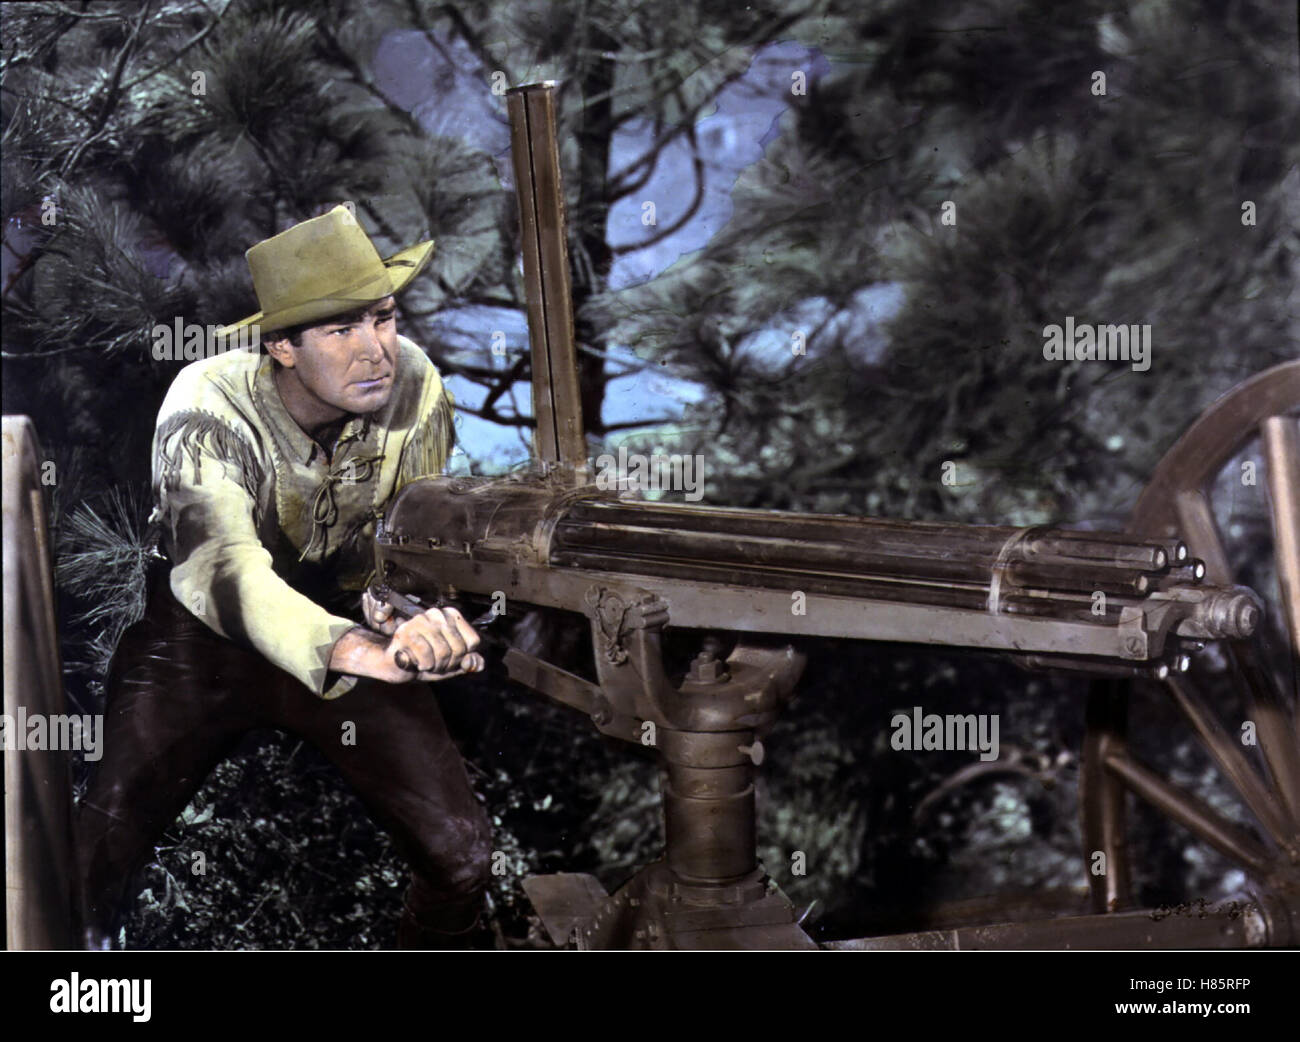 Reiter gegen Sitting Bull, (CAVALRY SCOUT), USA 1951 Regie: Lesley Selander ASTA CAMERON Stichwort: Maschinengewehr Foto Stock